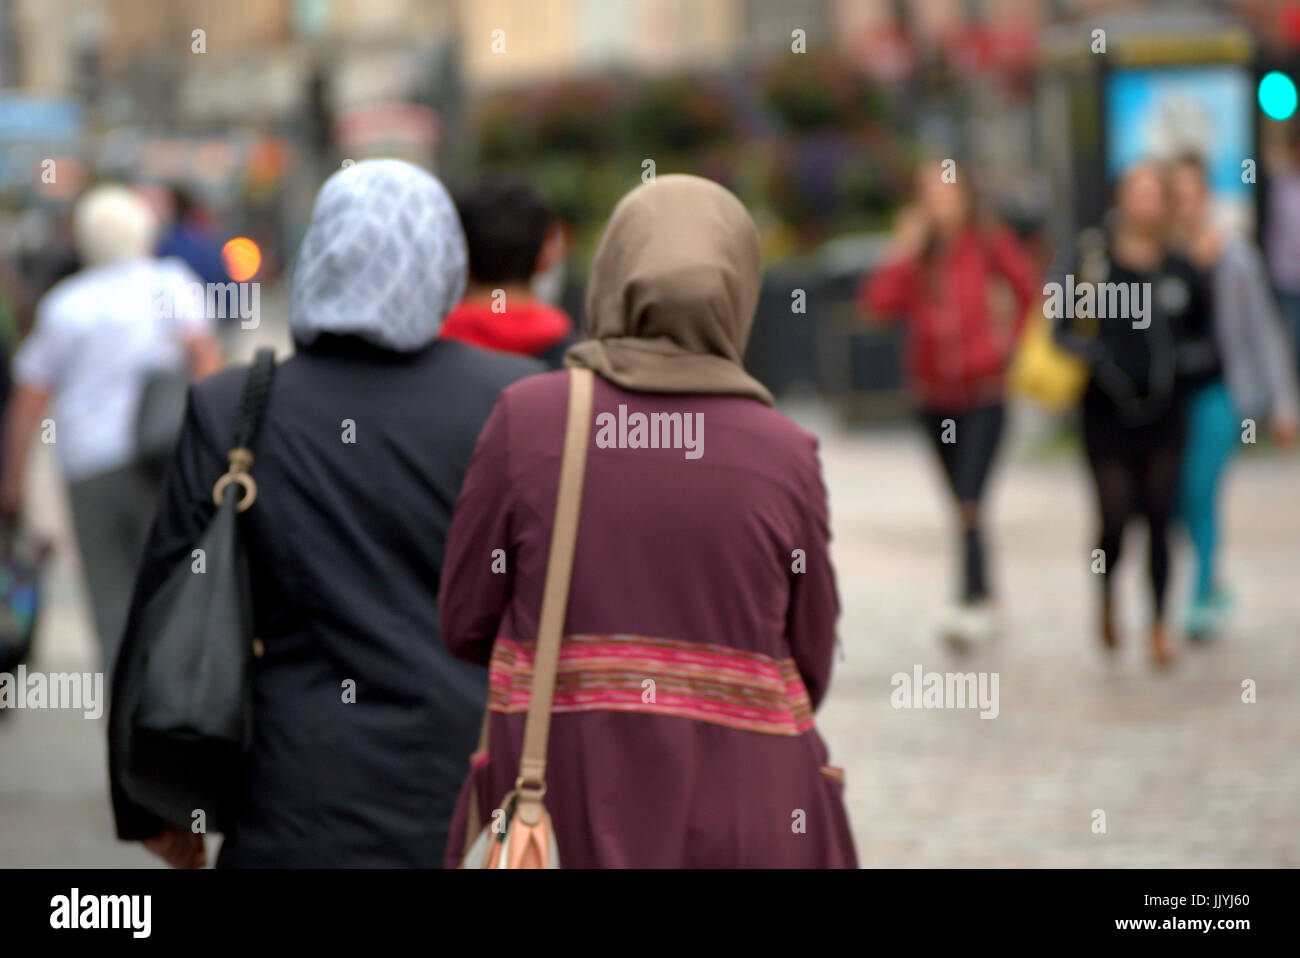 Asiatische Flüchtlinge gekleidet hijab Schal auf der Straße in Großbritannien alltägliche Szene Opfer bedroht junge weiße Mädchen Stockfoto